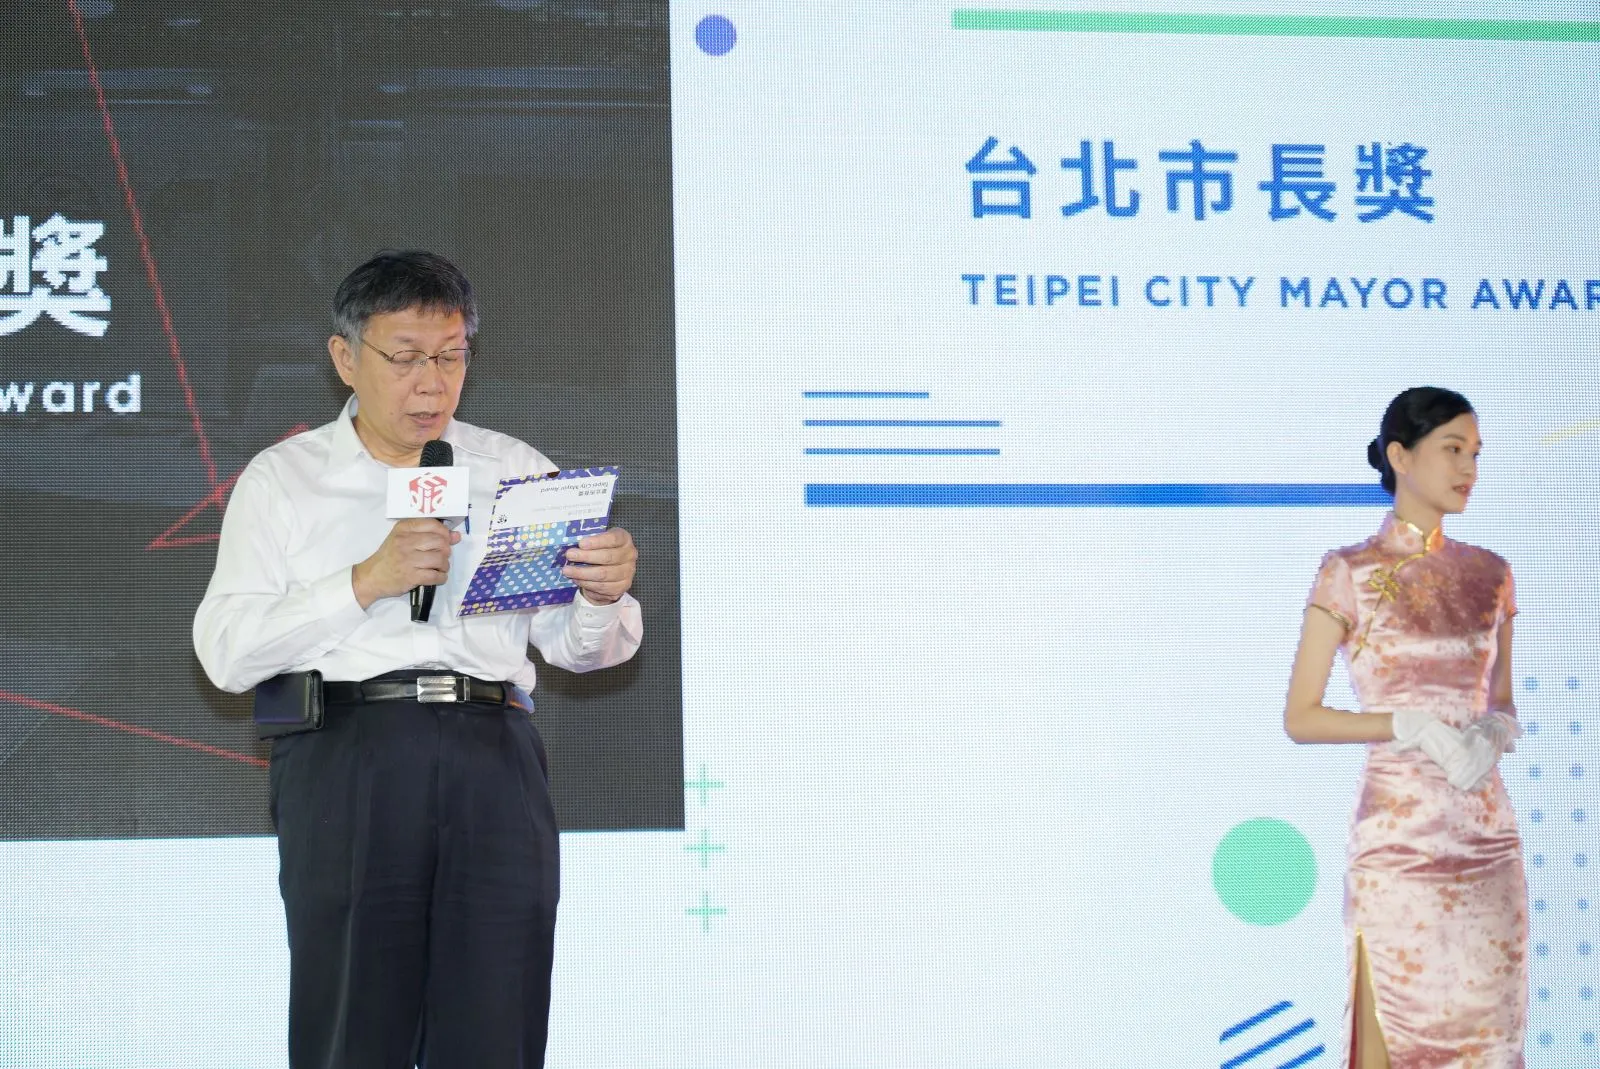 柯文哲市長公布2020臺北設計獎獎獲獎名單